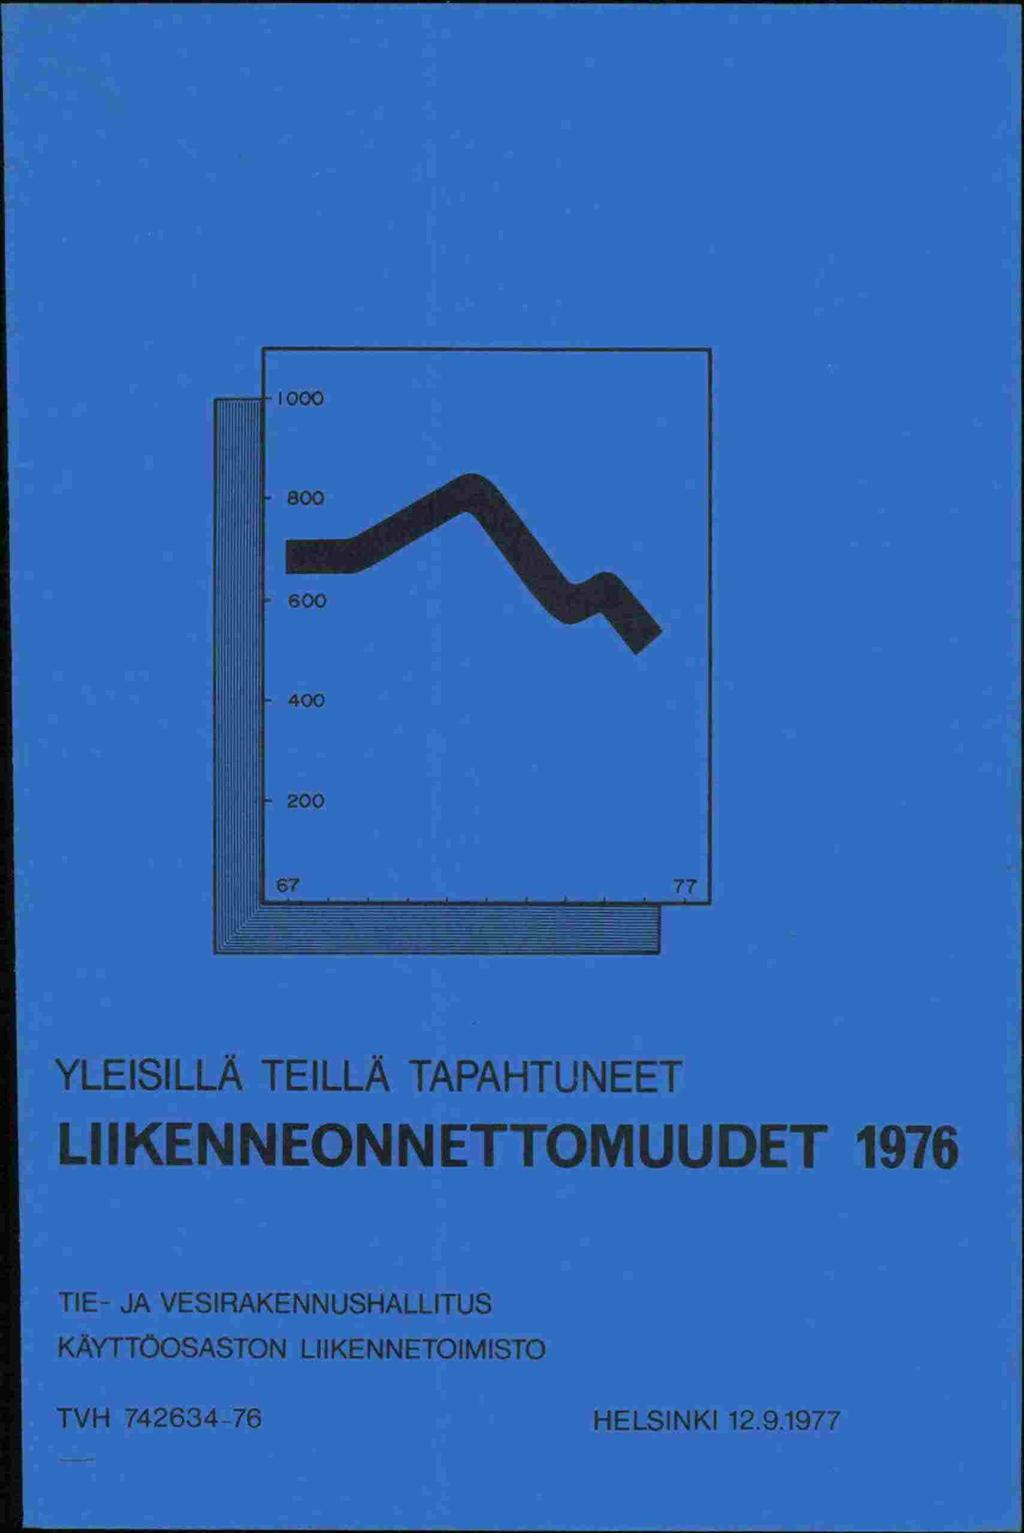 67 77 YLEISILLA TEILLÄ TAPAHTUNEET LIIKENNEONNETTOMUUDET 1976 TIE- JA